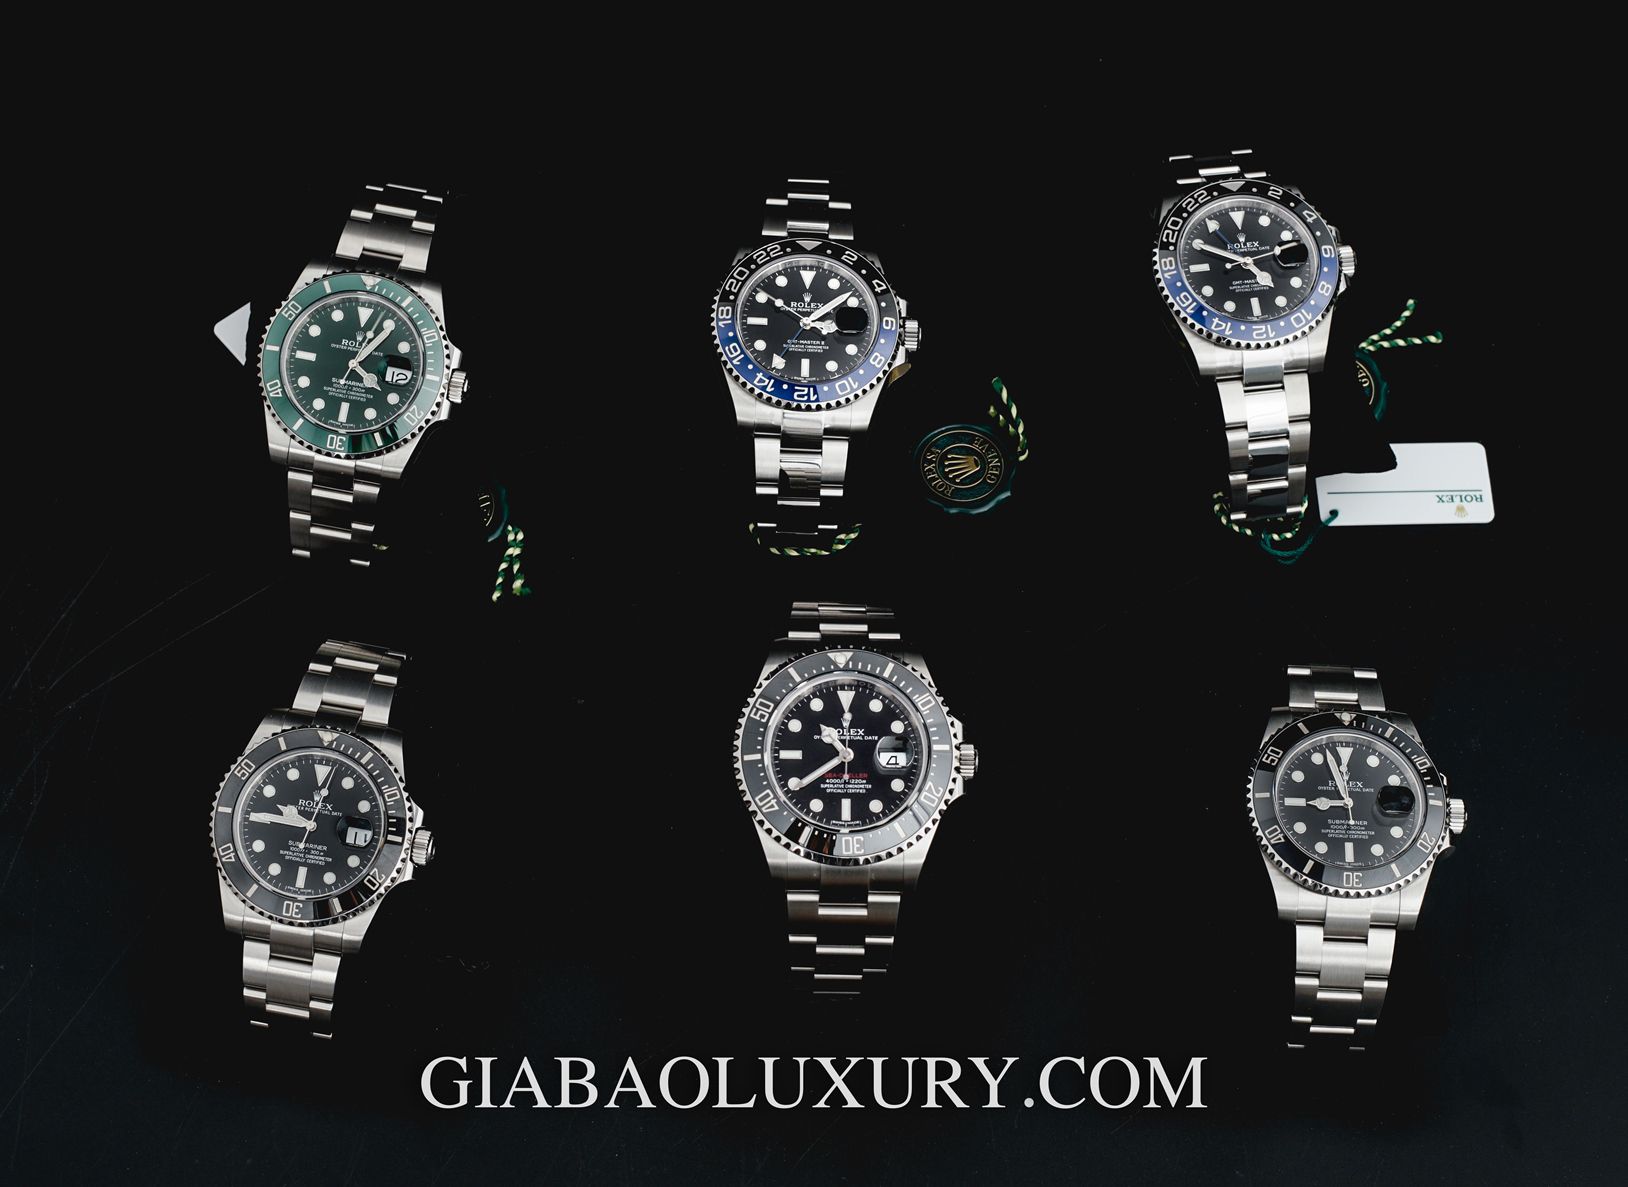 Dự đoán: Giá bán đồng hồ Rolex Submariner sẽ như thế nào trong năm 2020?